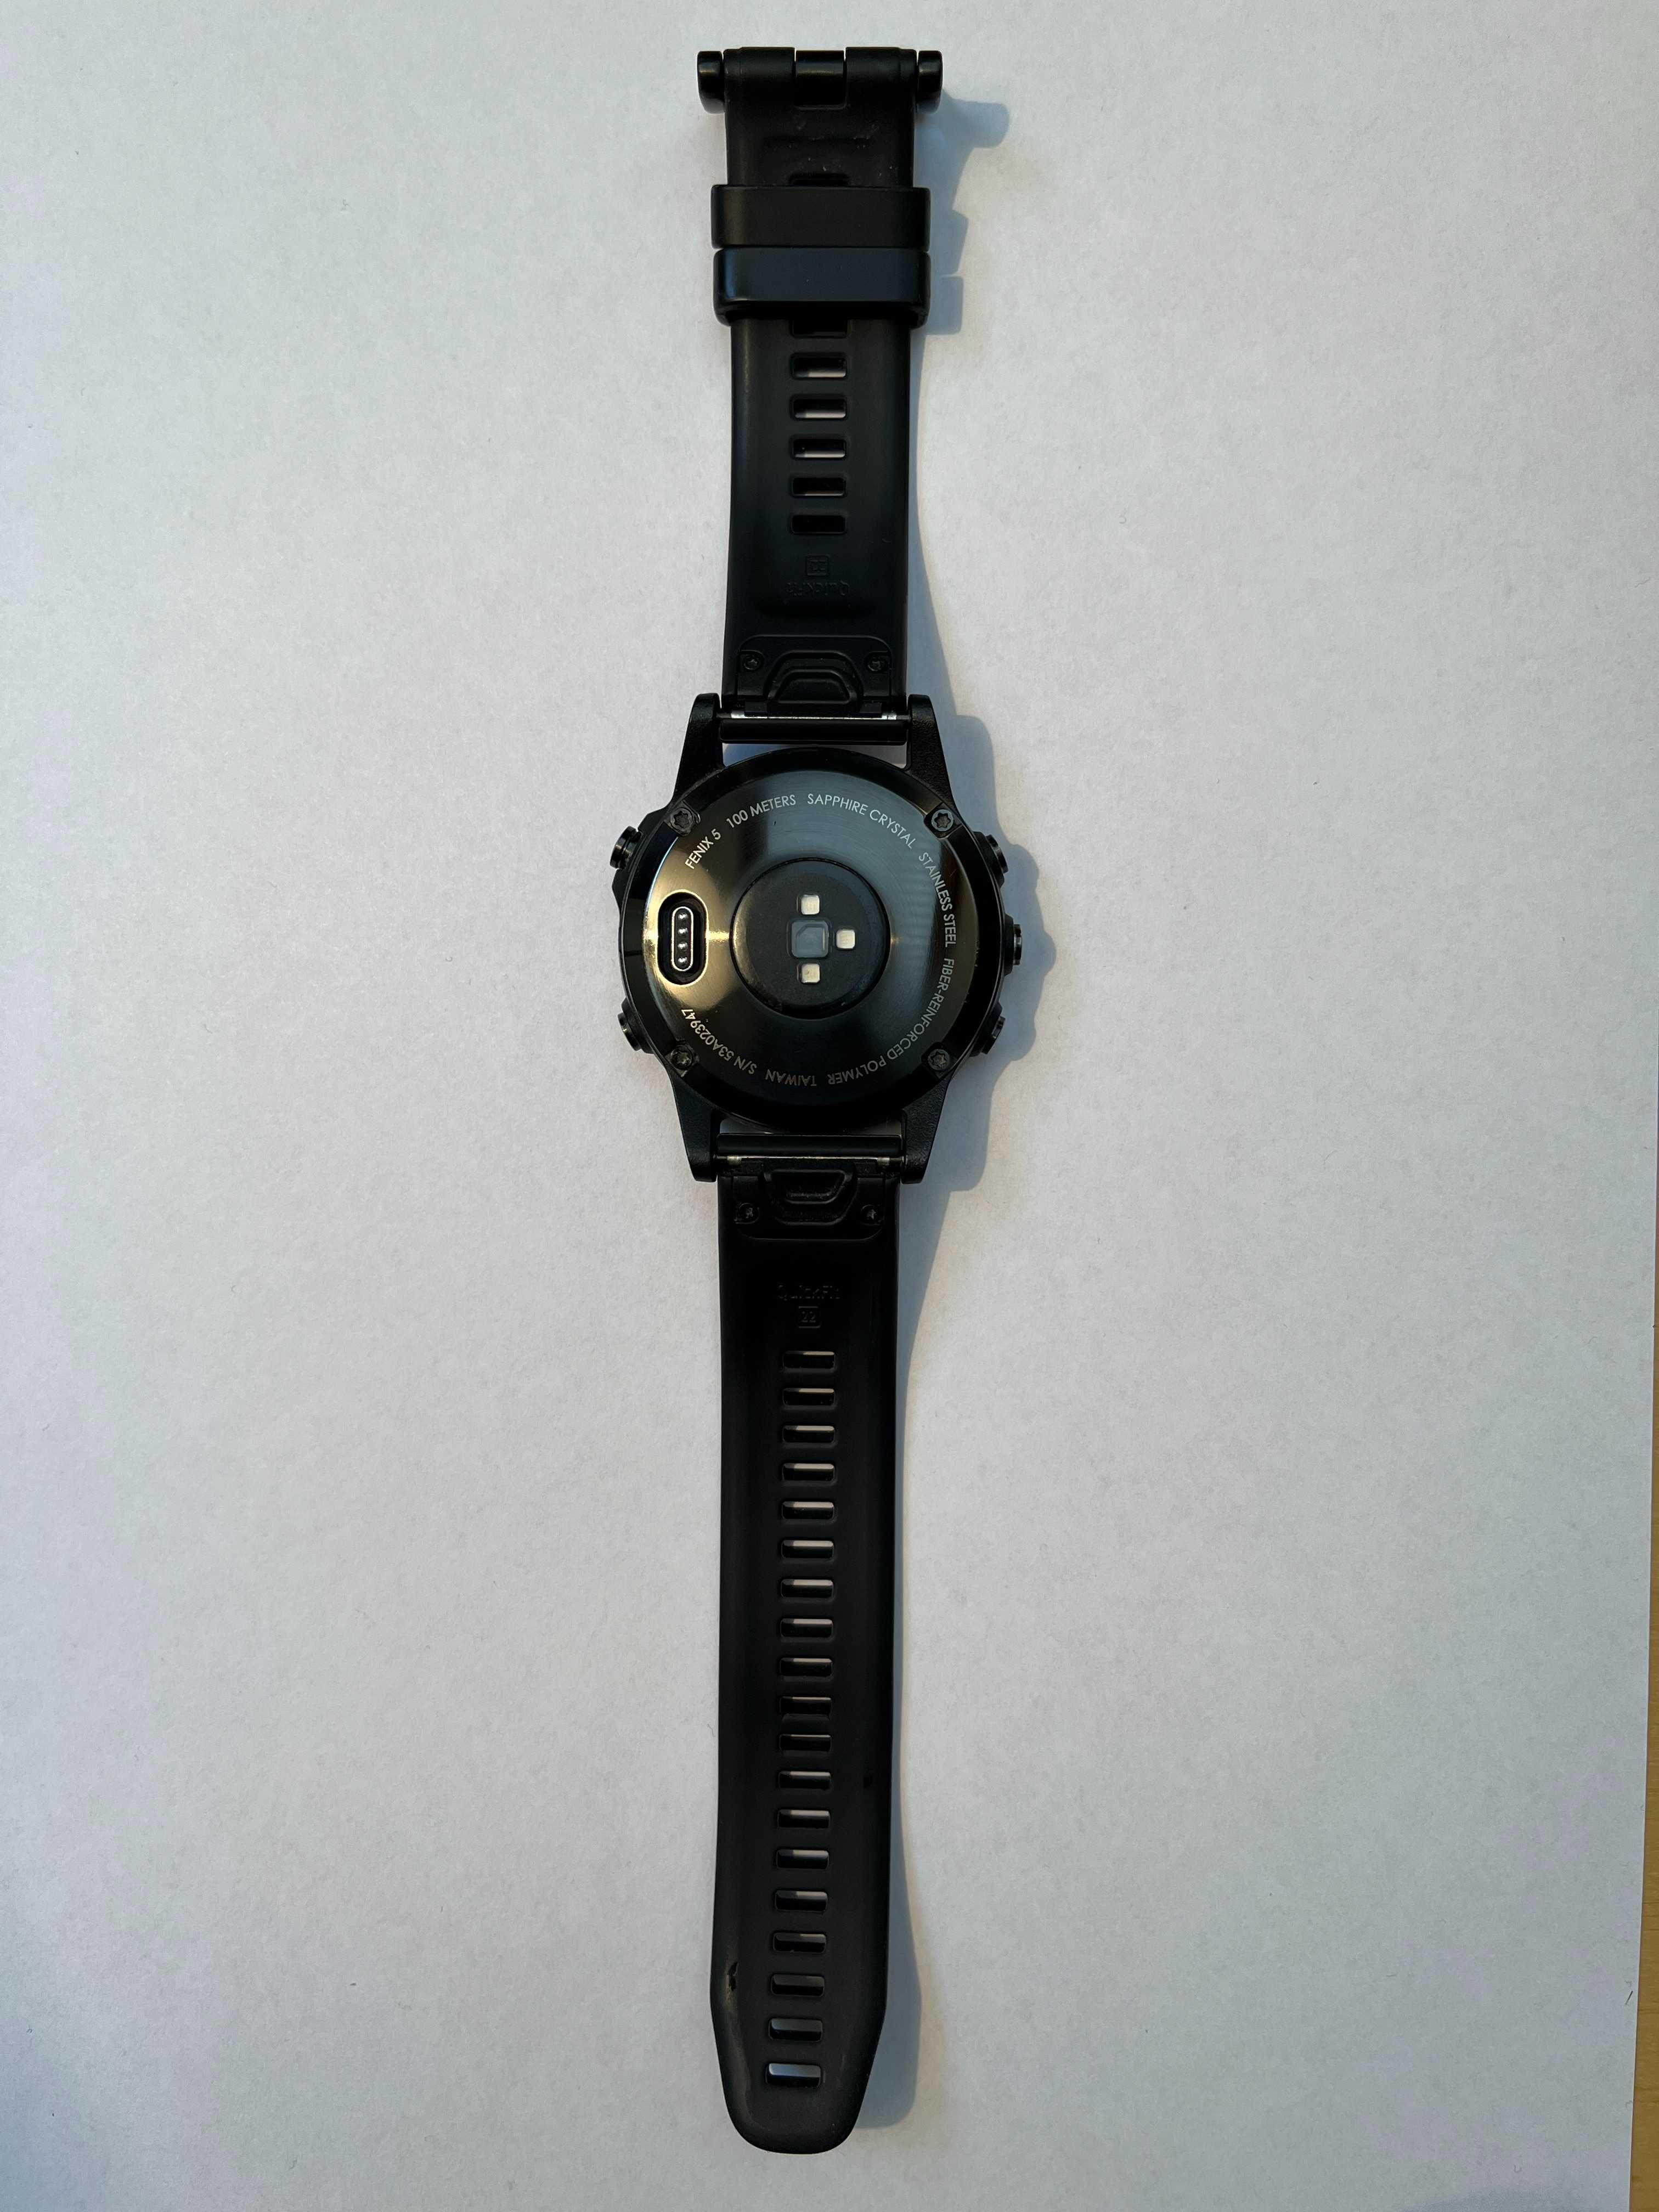 Zegarek sportowy Garmin FENIX 5 Sapphire - używany